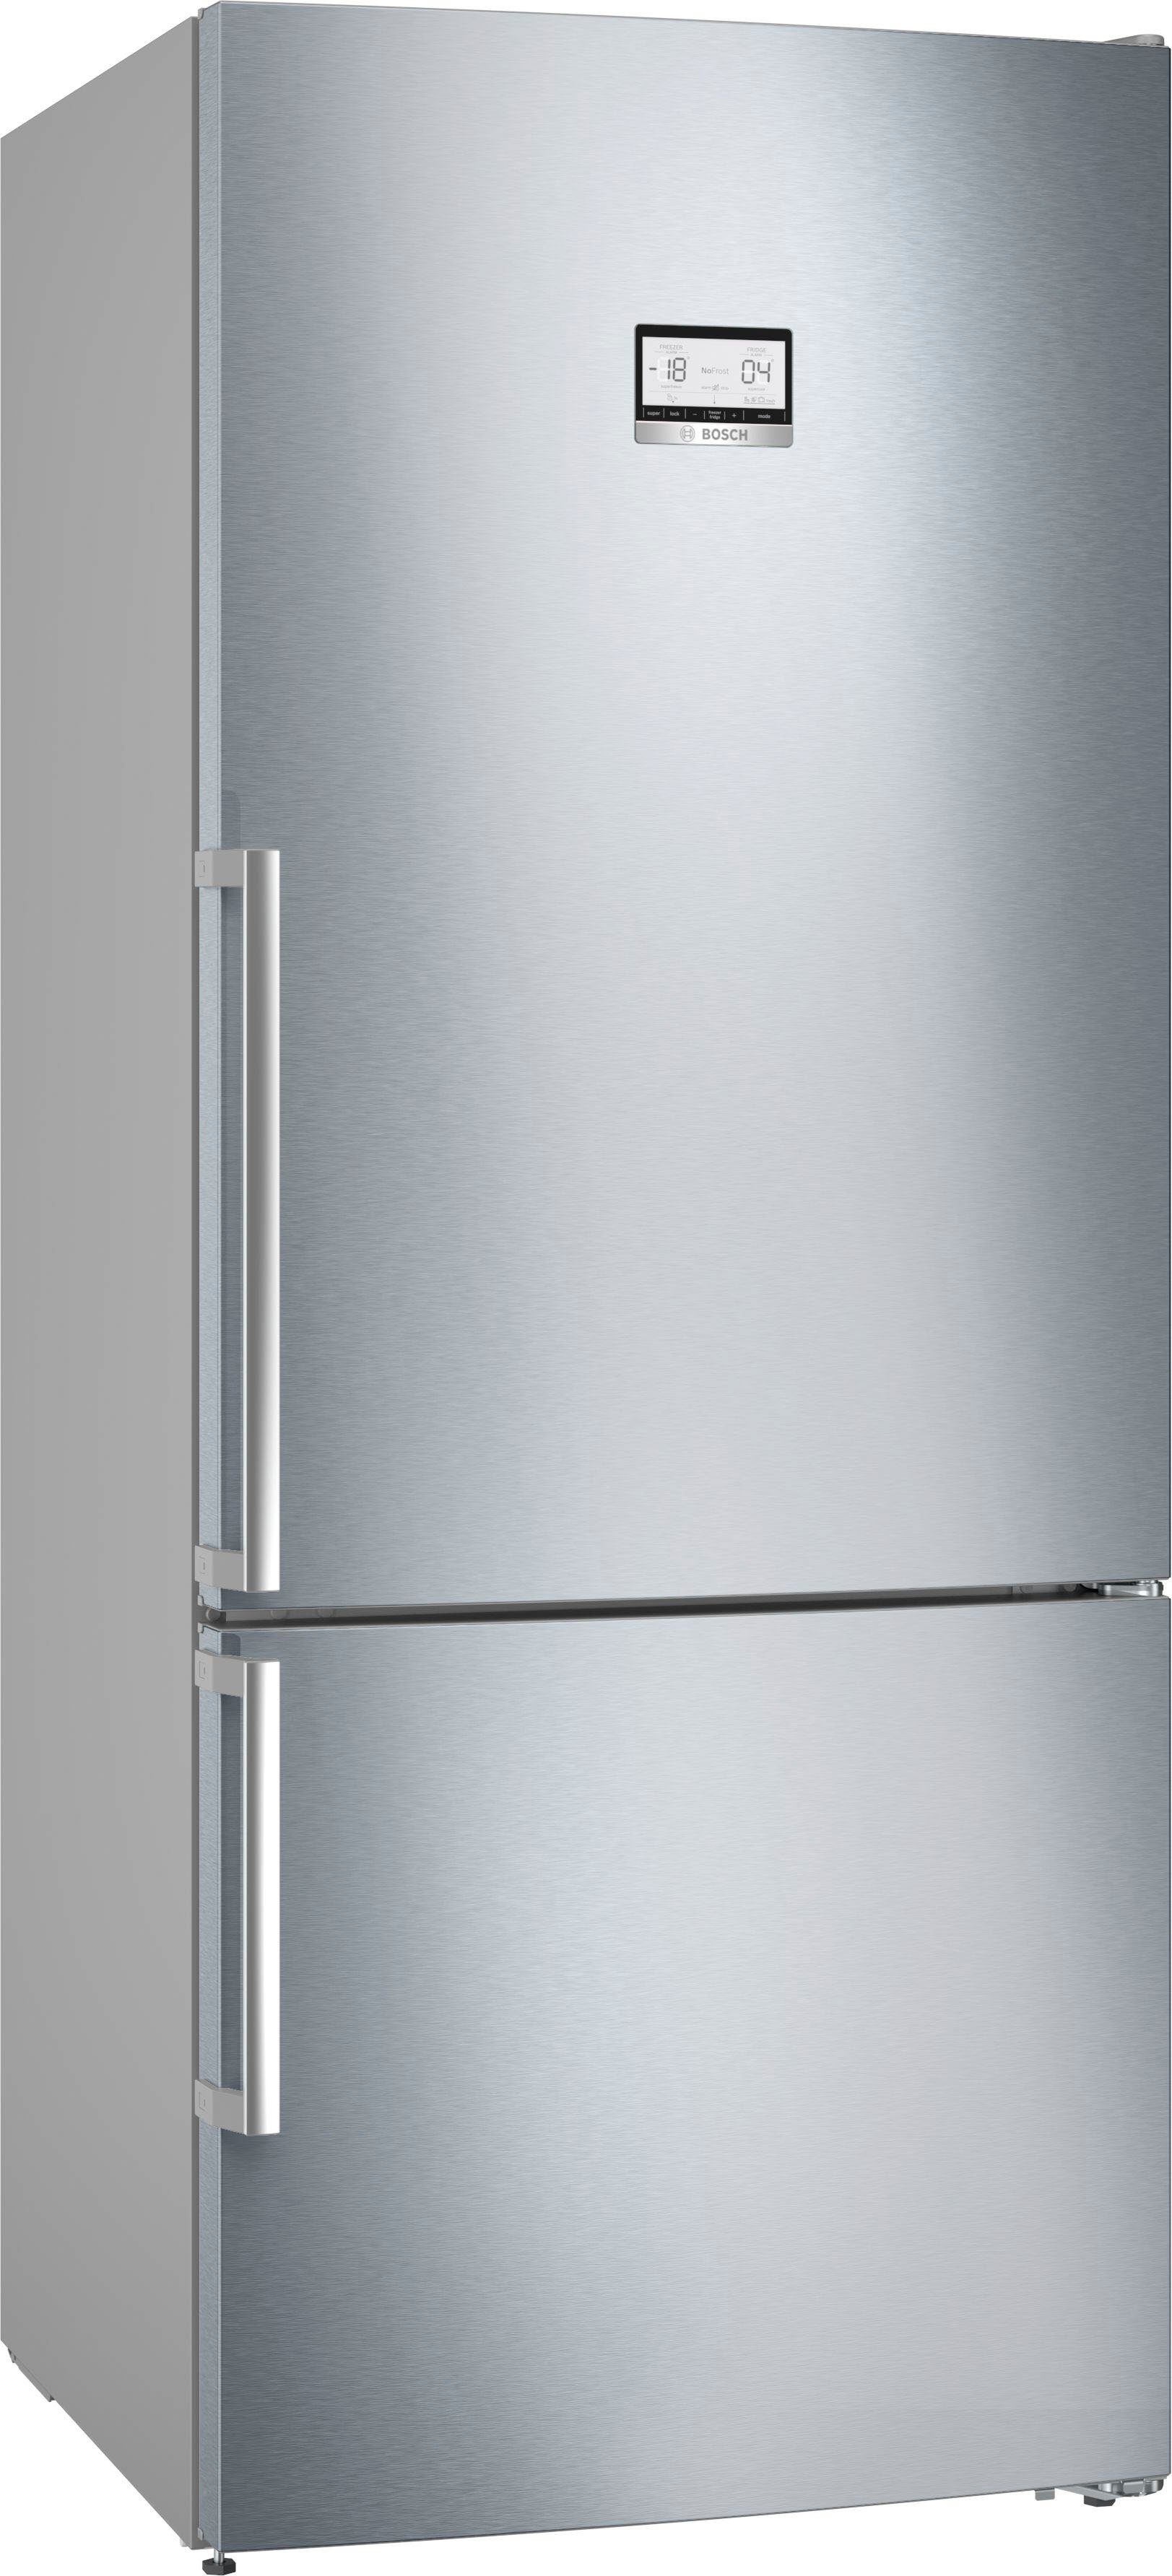 Getestete Bosch Kühlschränke online | OTTO kaufen